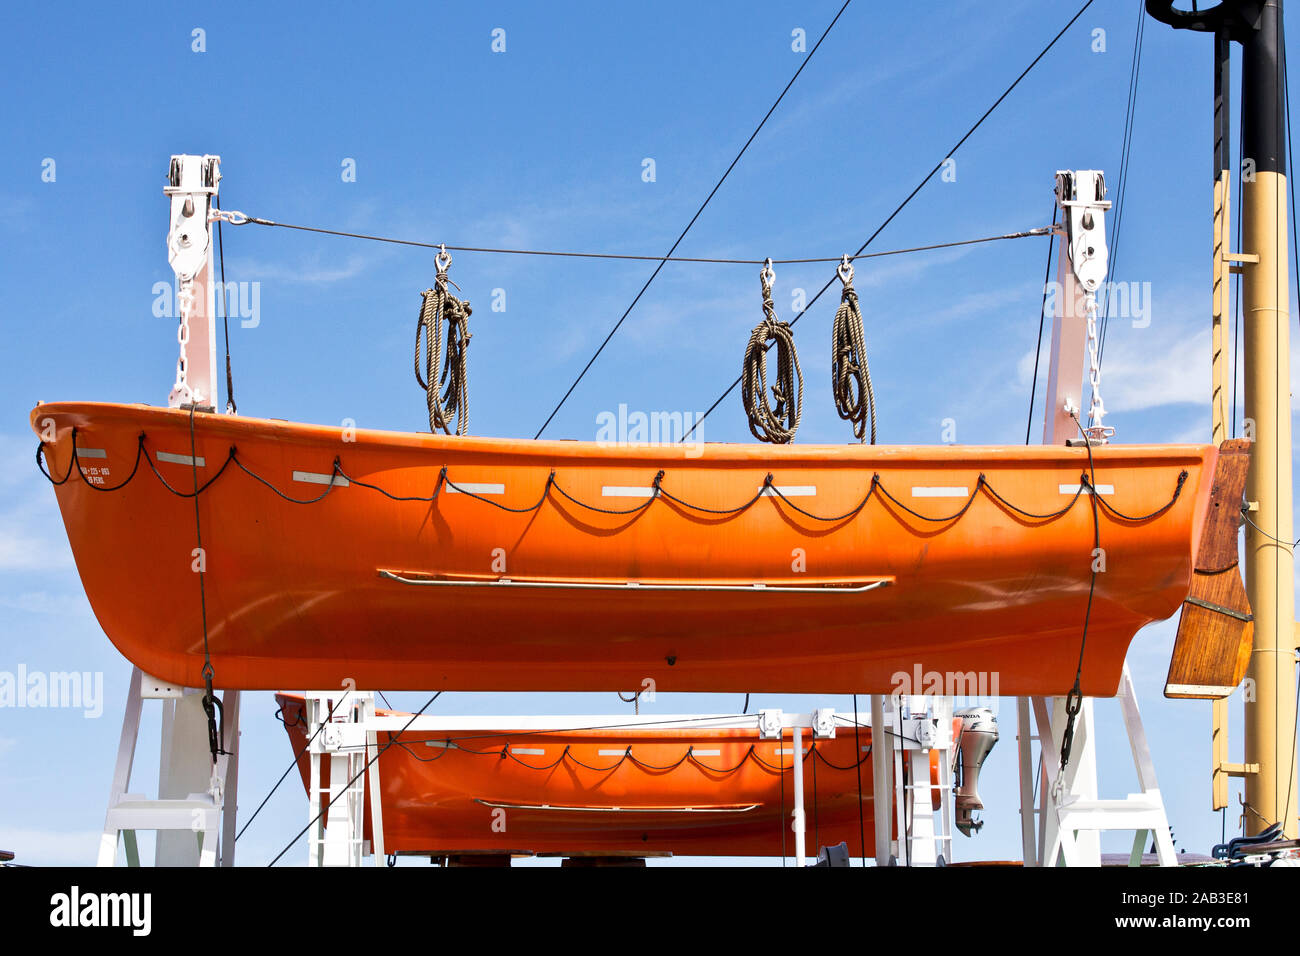 Rettungsboote auf einem Schiff im Hafen |Lifeboats on a ship in the harbor| Stock Photo